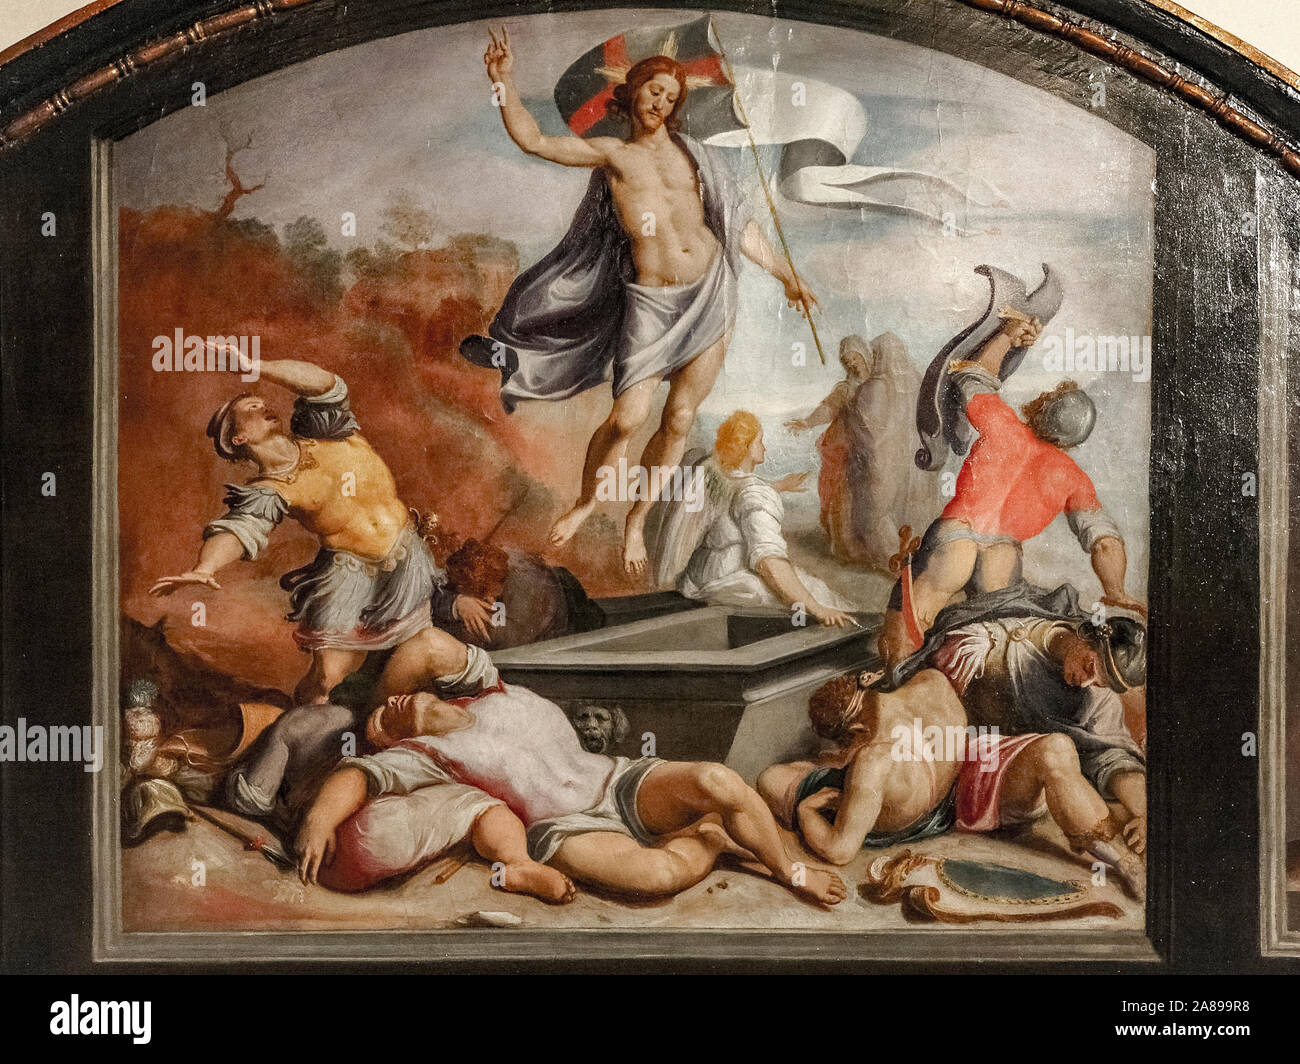 Italien Toskana Arezzo: Nationales Museum für mittelalterliche und moderne Kunst: Heilige von Titus: Auferstehung Christi Sec. XVI. Stockfoto